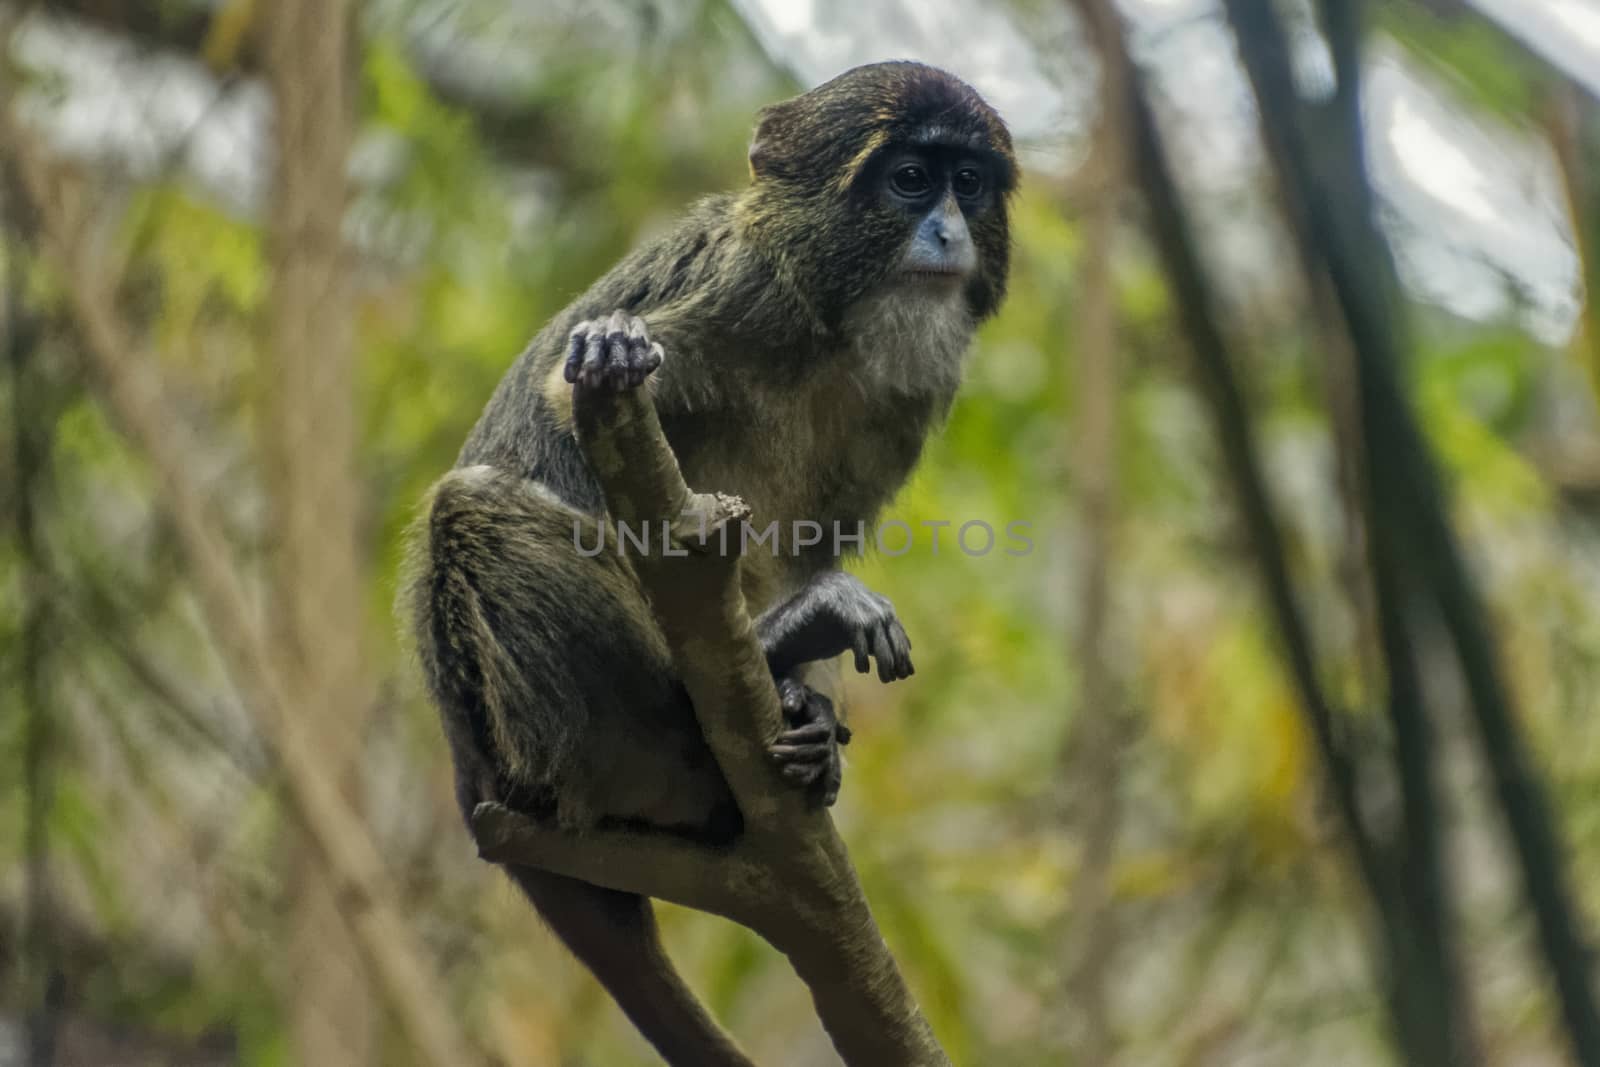 Apprehensive Monkey by bkenney5@gmail.com